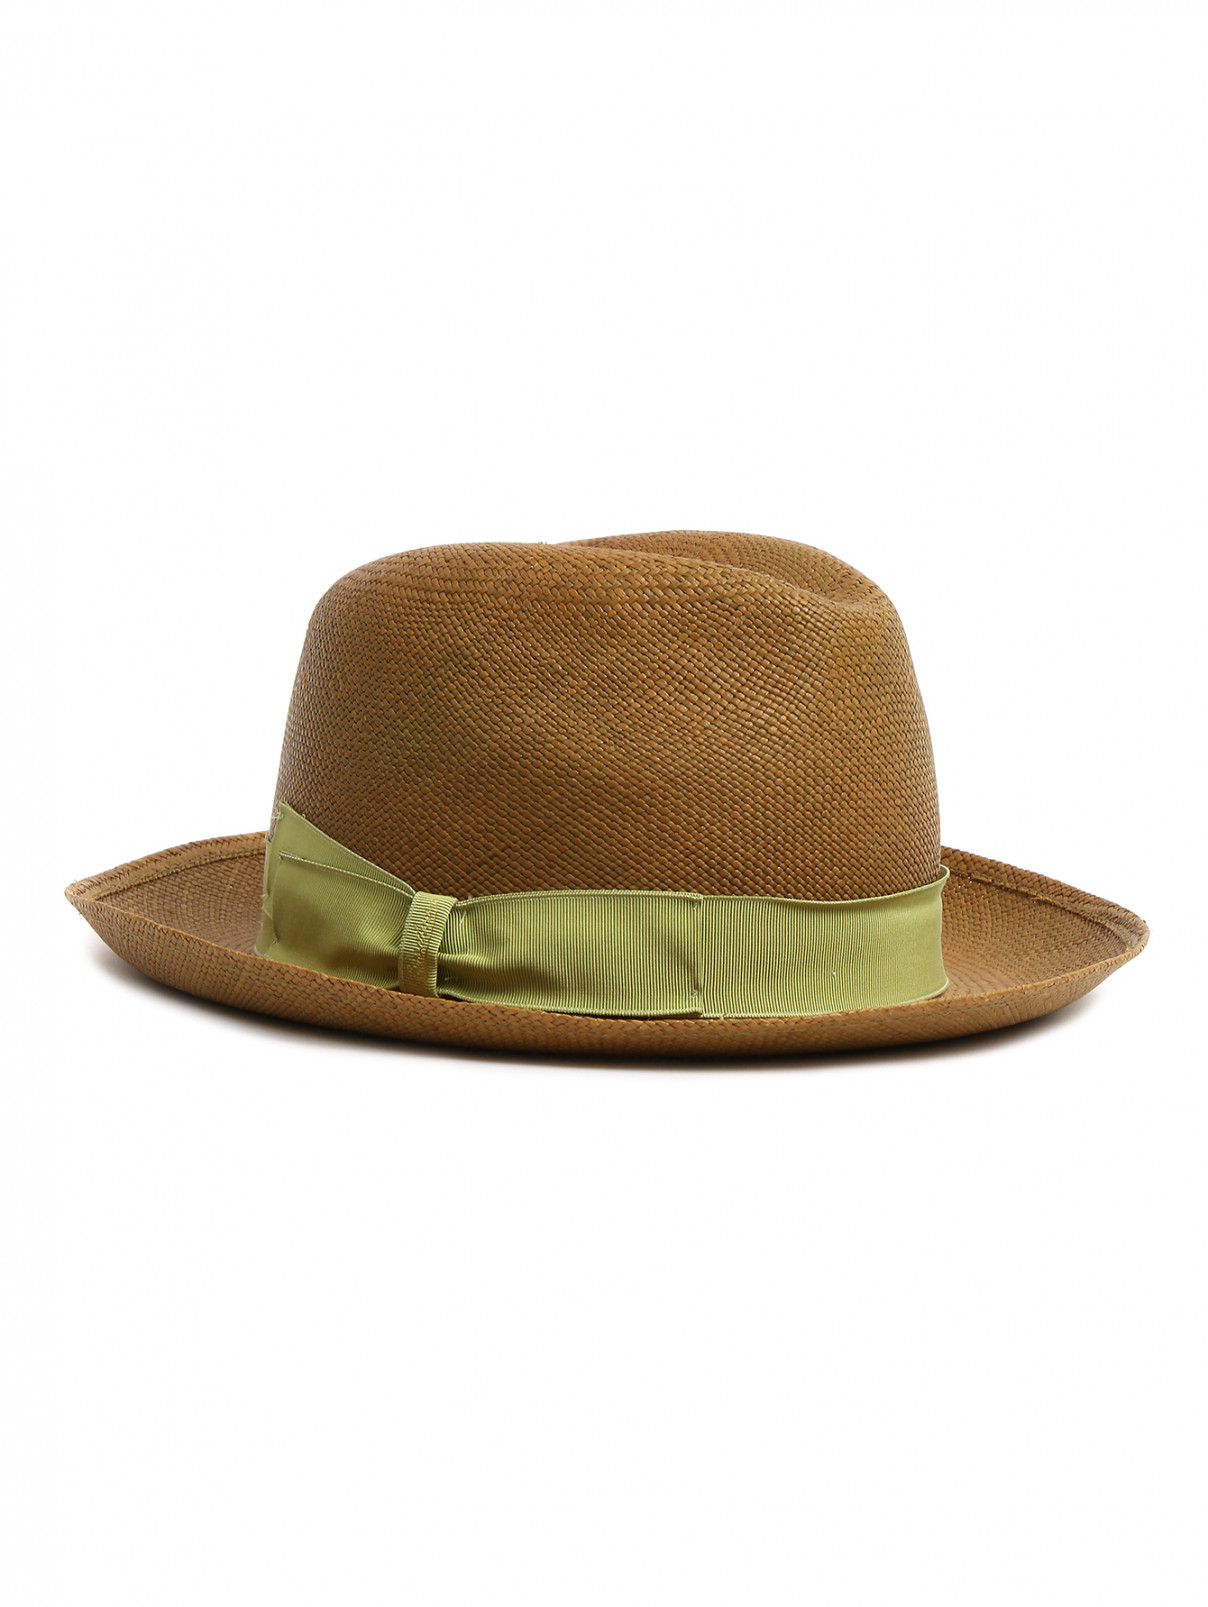 Шляпа соломенная с отделкой лентой Borsalino  –  Общий вид  – Цвет:  Зеленый